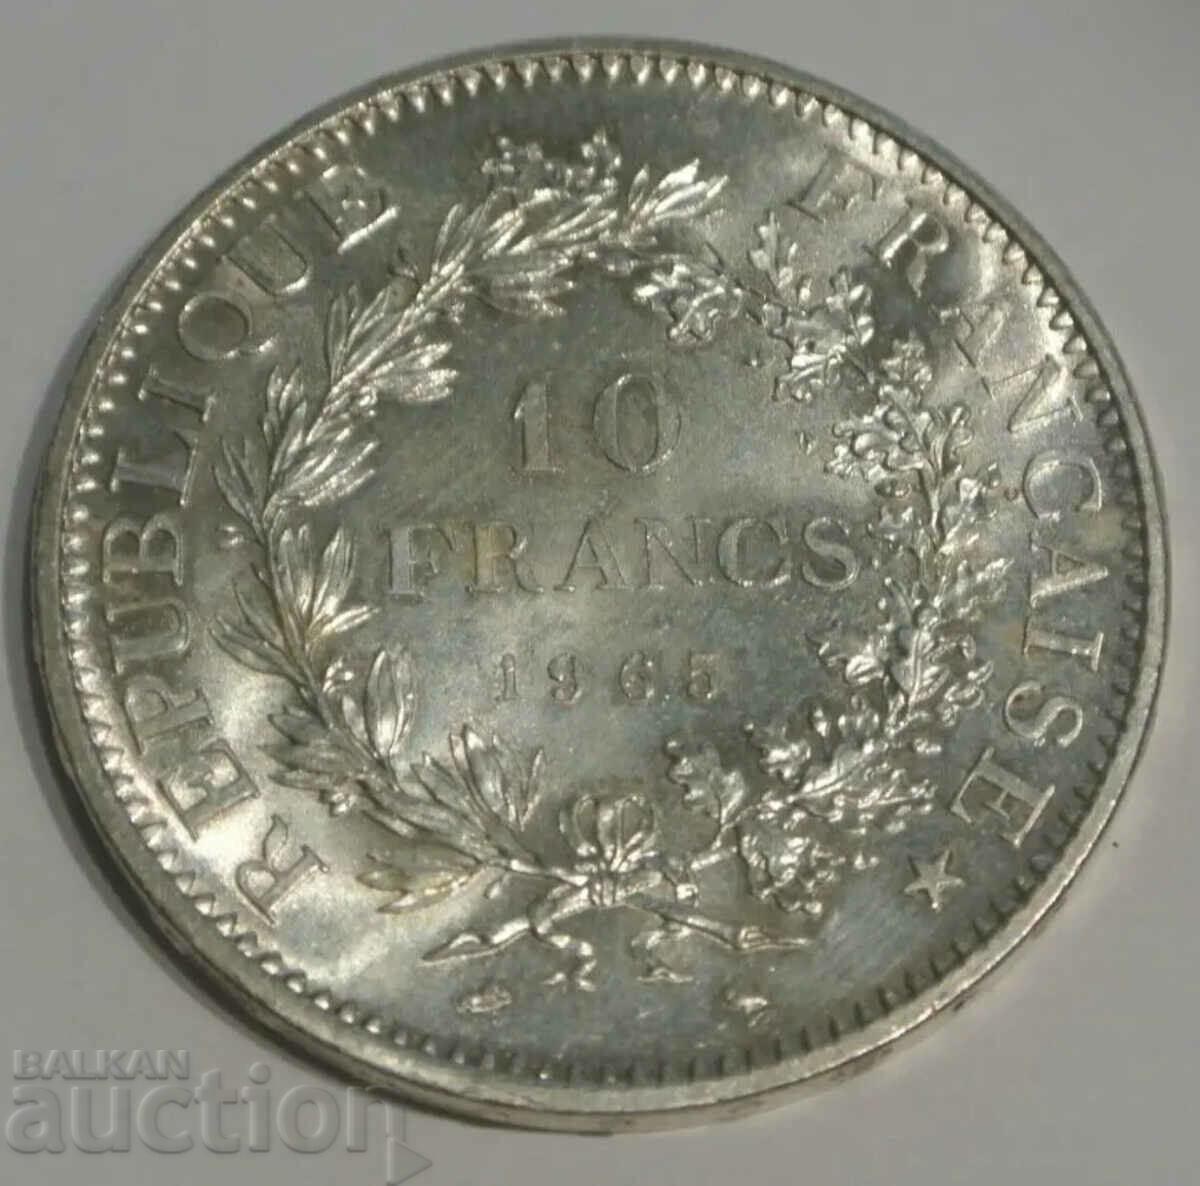 France 10 francs 1965 silver